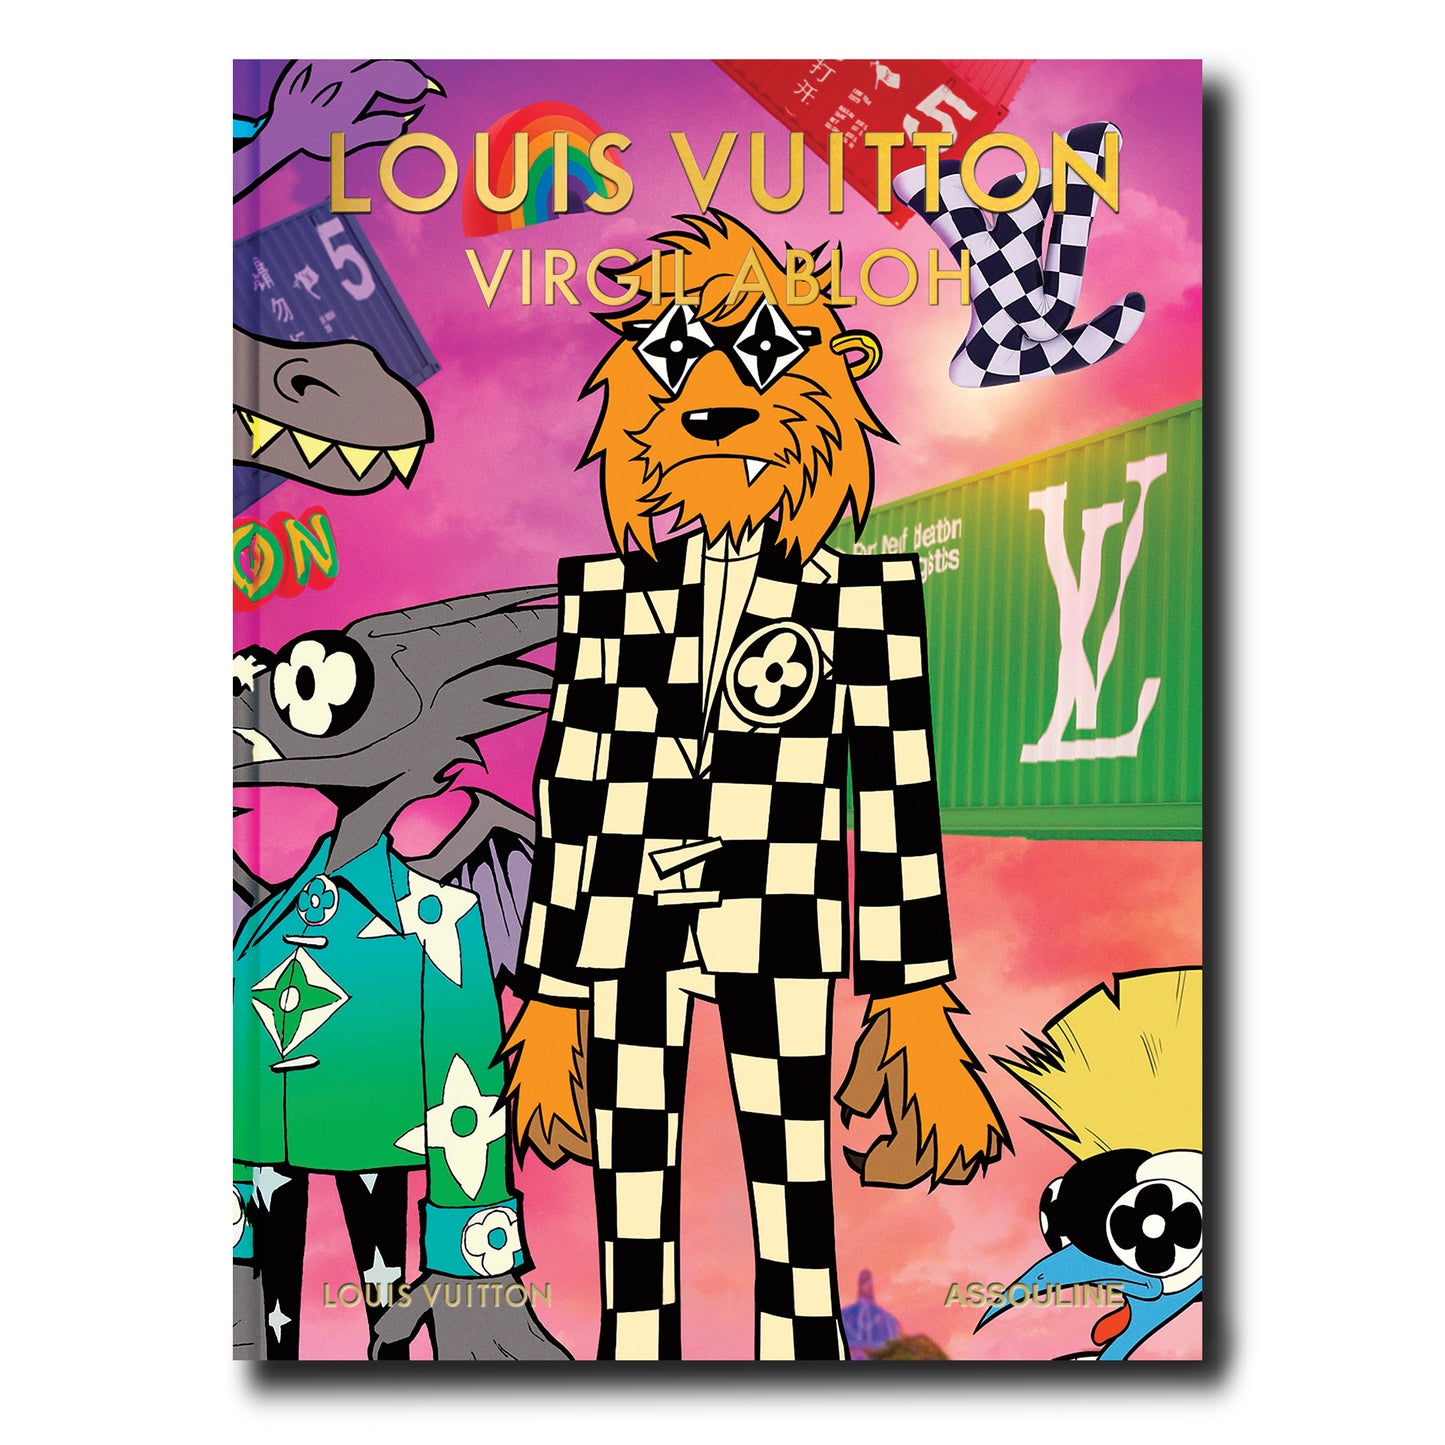 Louis Vuitton Virgil Abloh (Cartoon Cover)